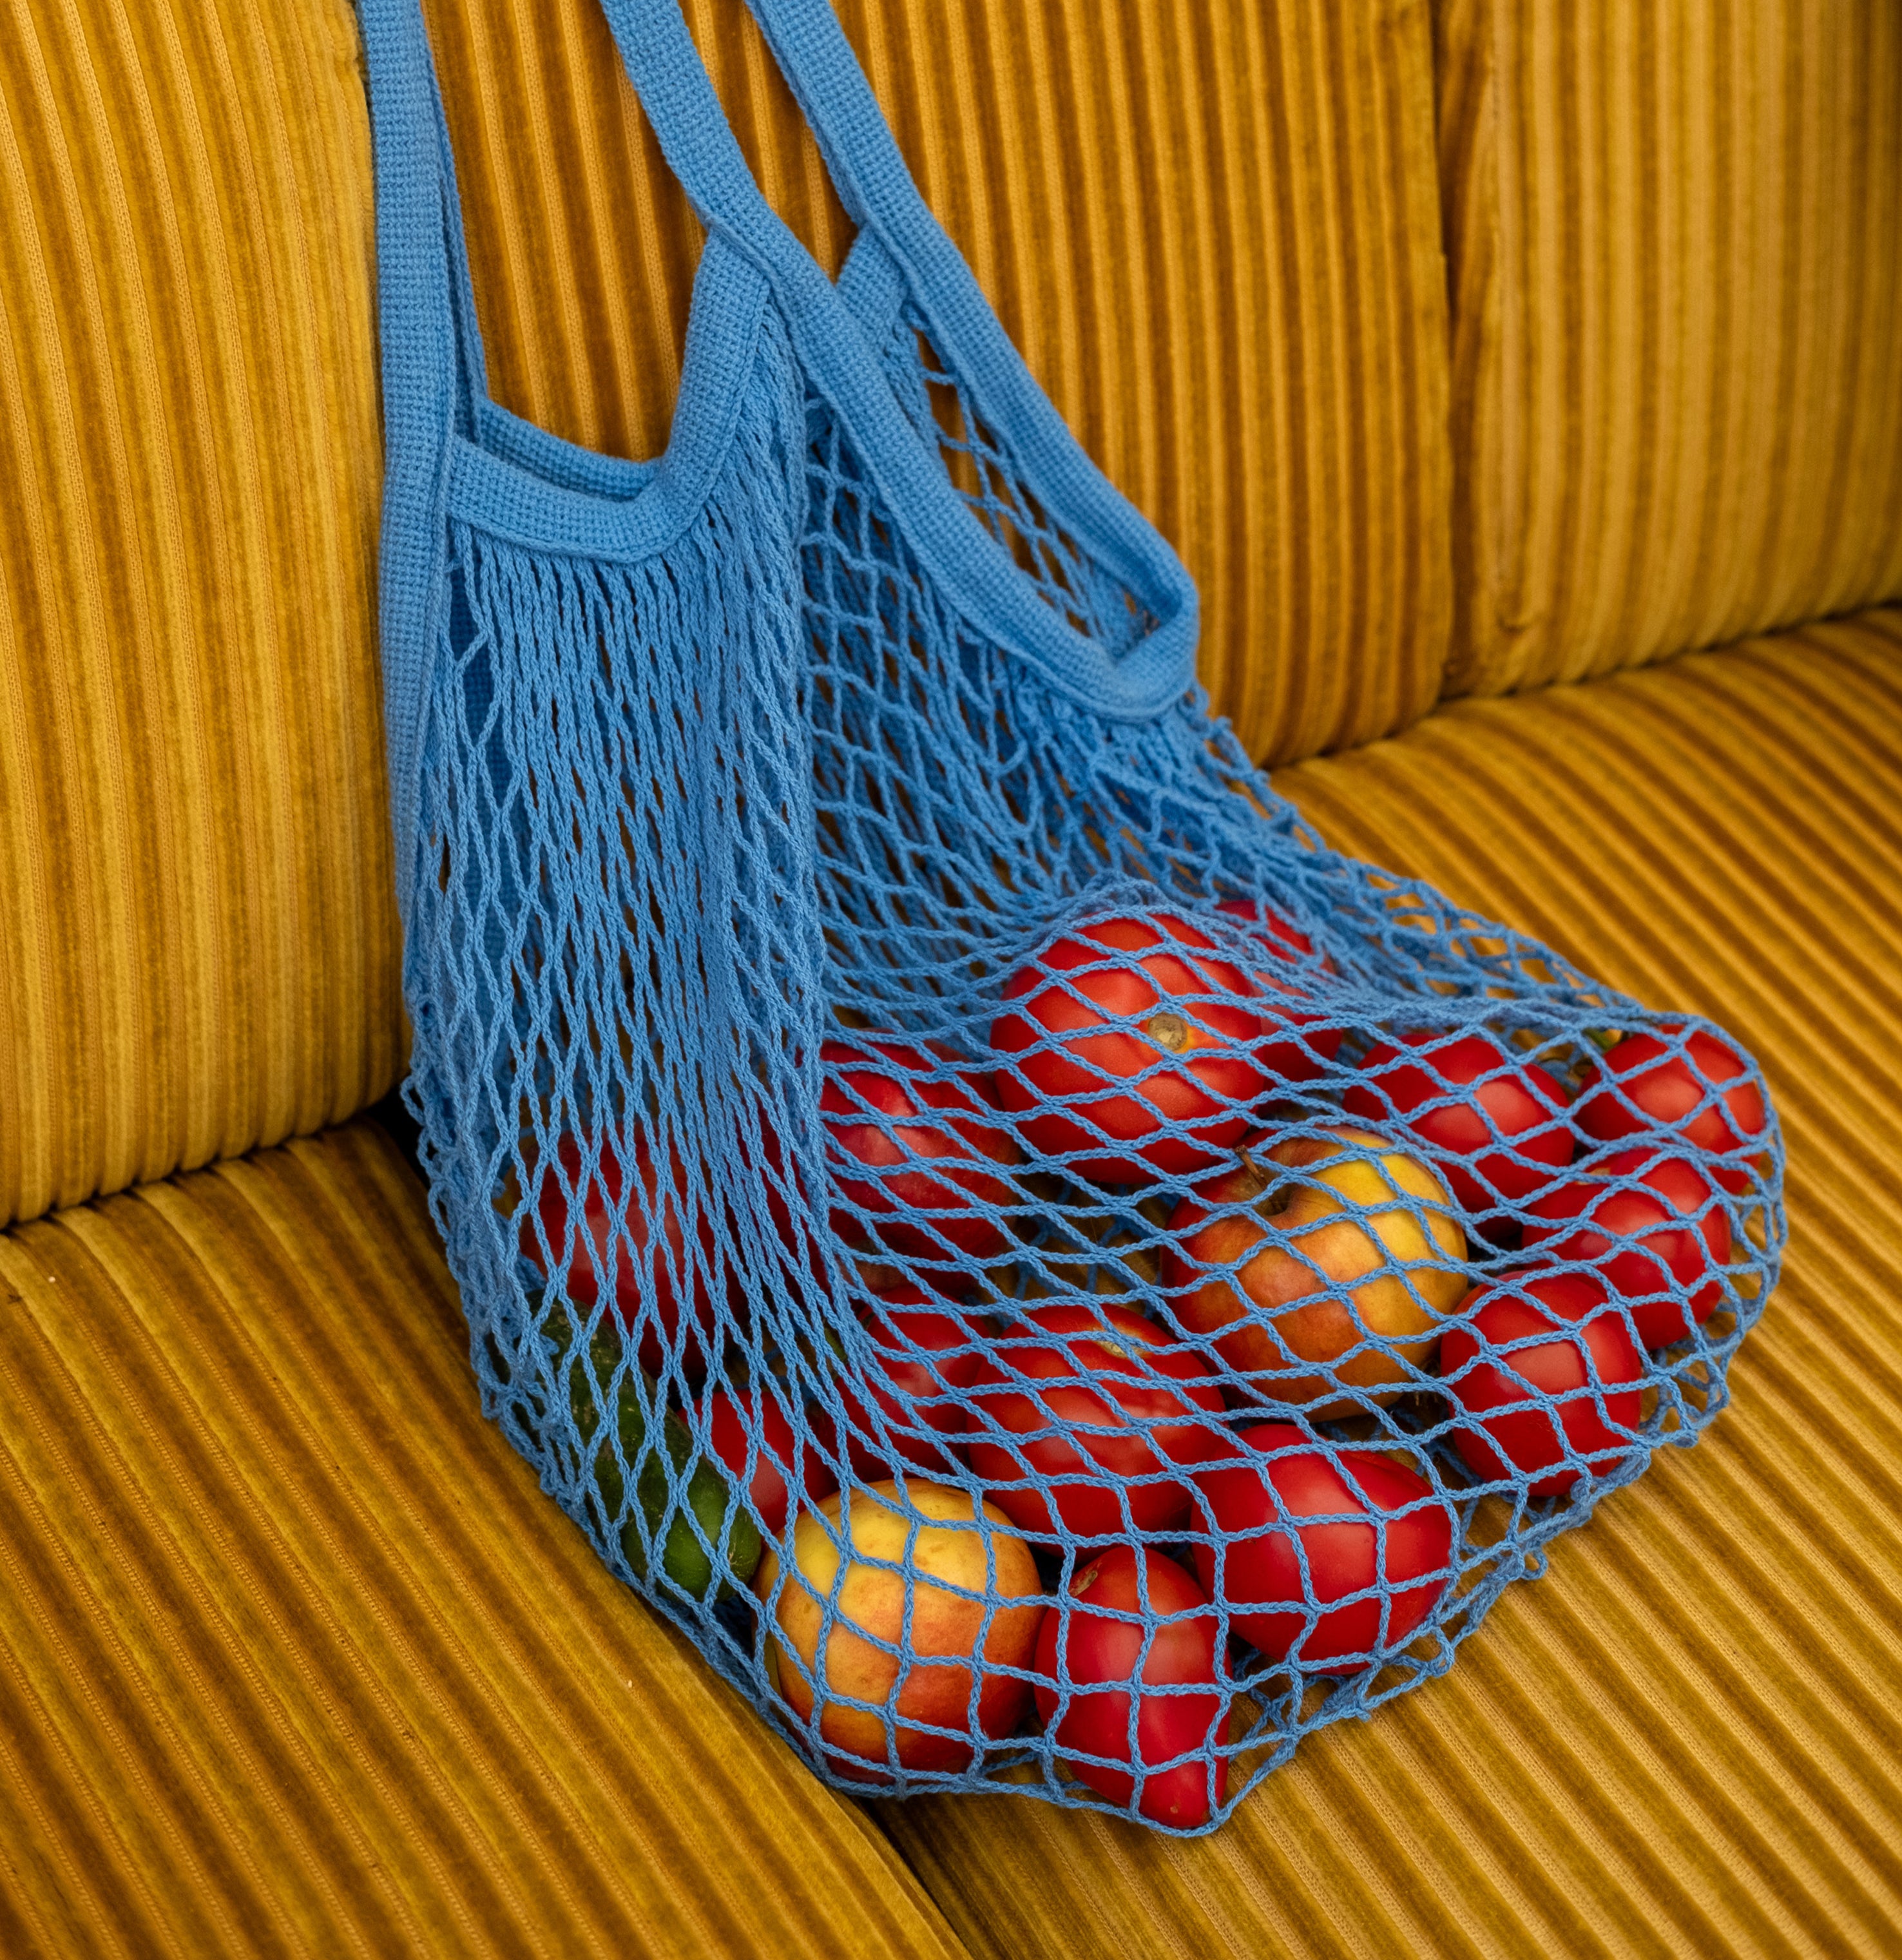 Rezginė sietka pirkinių krepšys mėlynos spalvos, su vaisiais viduje, ant sofos, dovanų idėjos, mados aksesuarai moterims